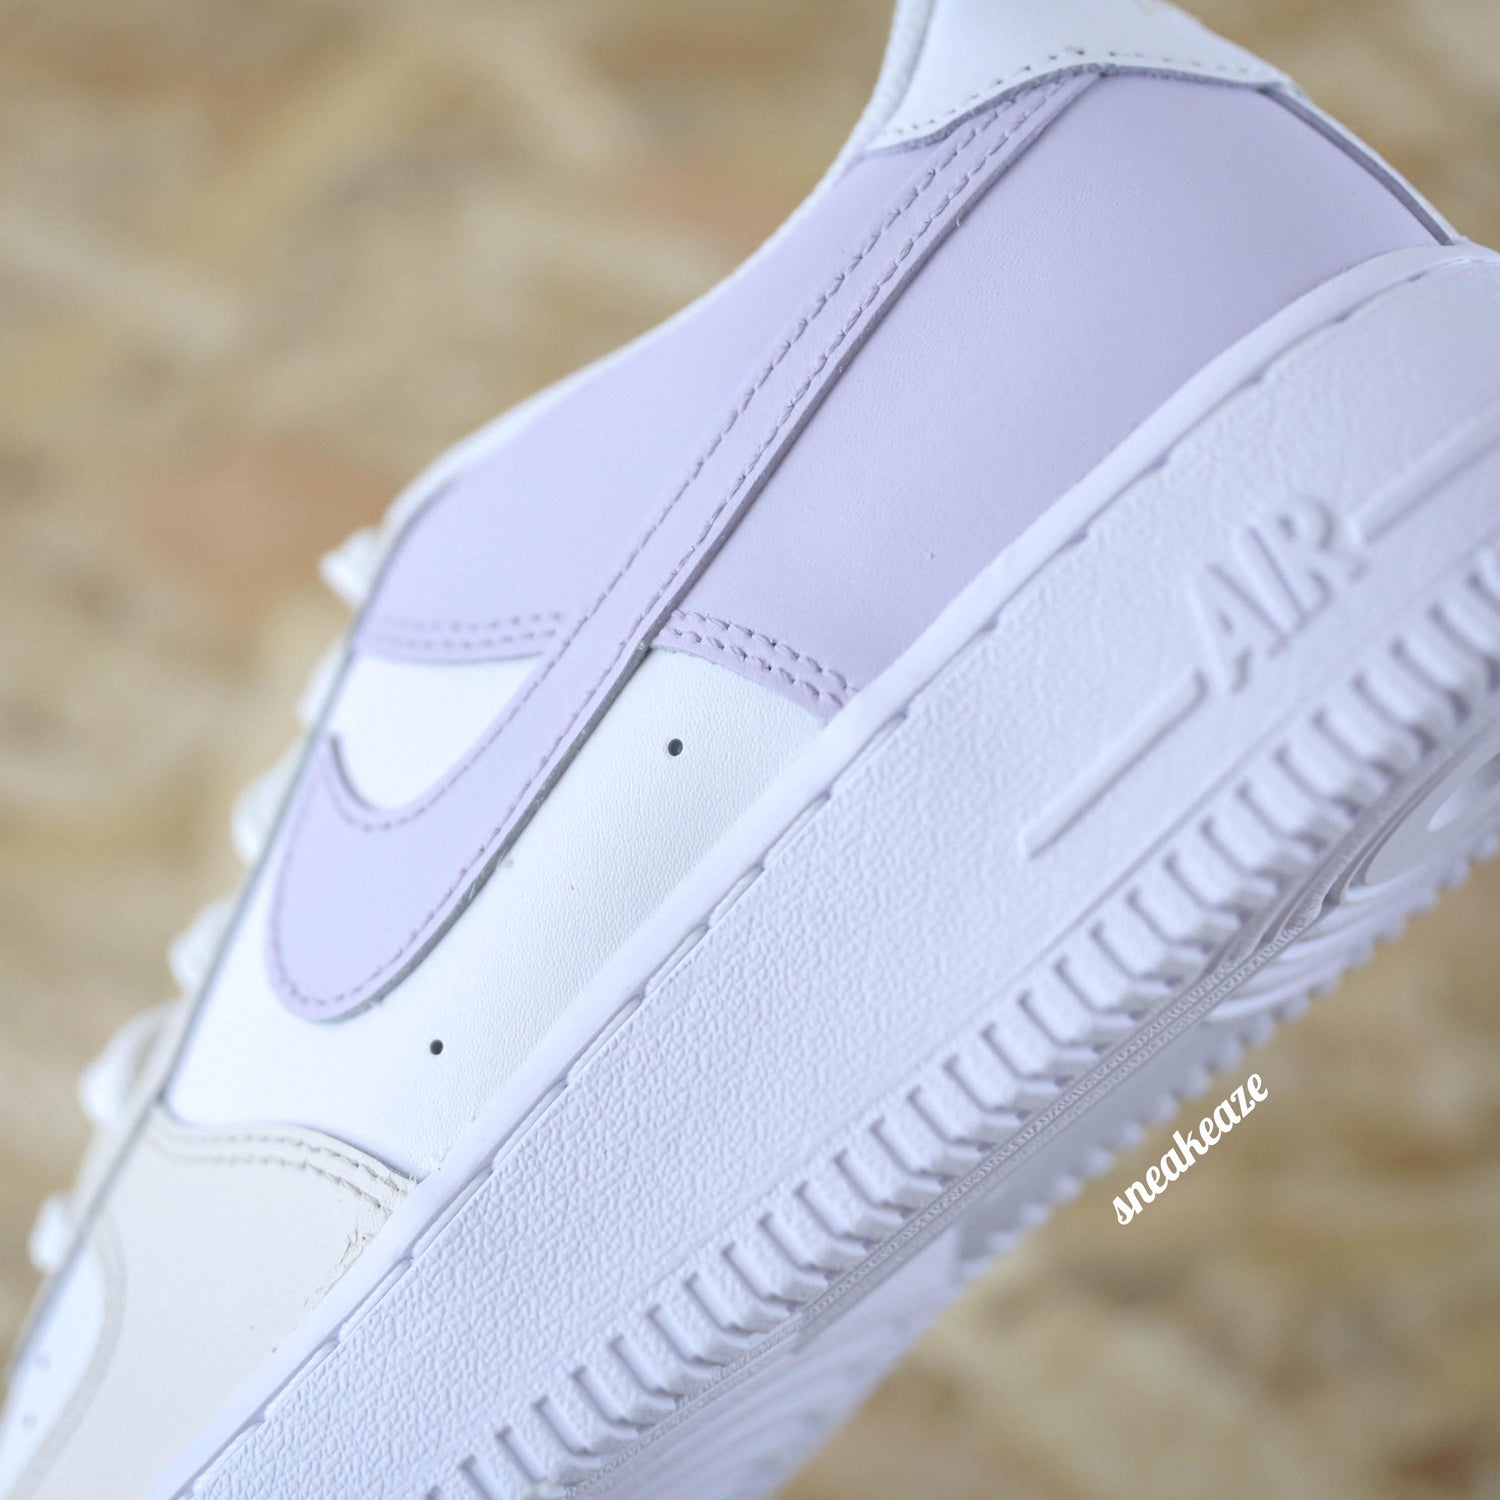 nike air force 1 custom sneakers couleur pastel cream et lila lavande af1 sneakeaze luxury